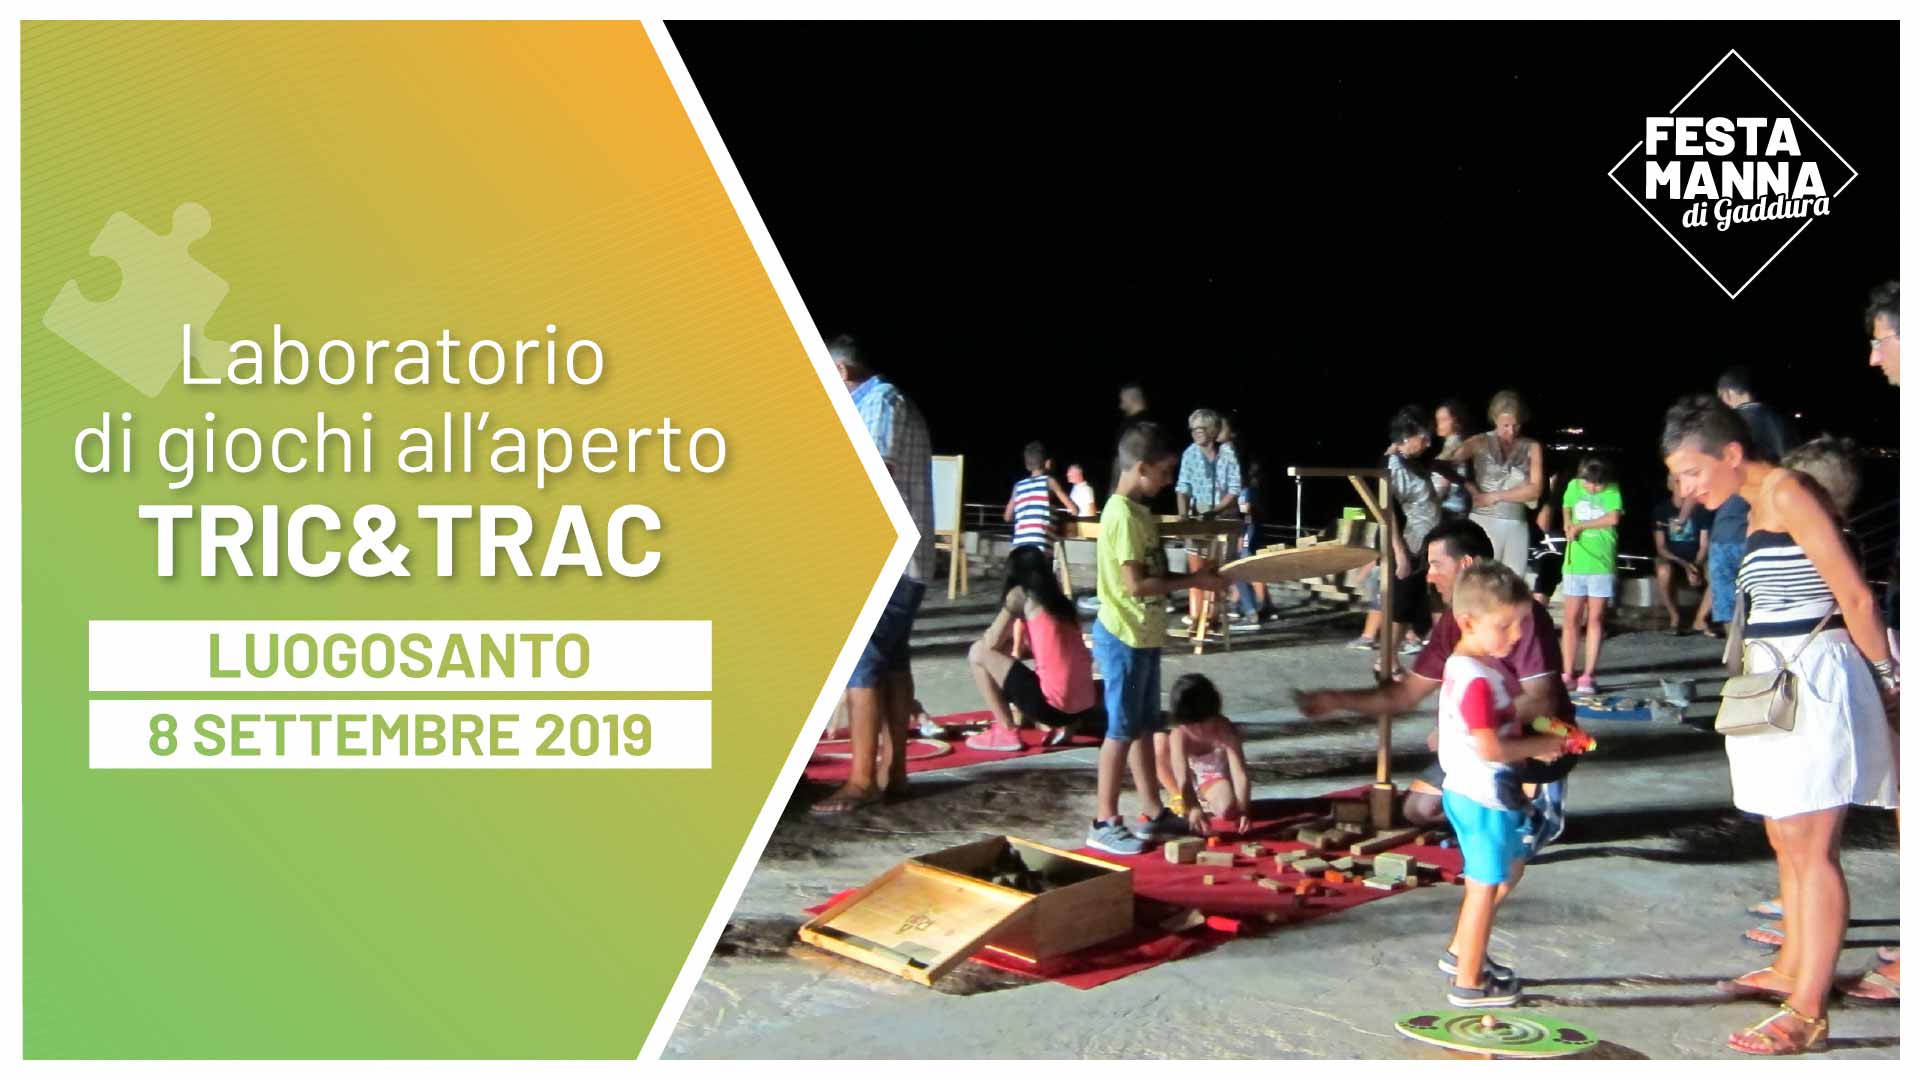 Tric & Trac, atelier de construction de jeux en bois | Festa Manna di Gaddura 2019